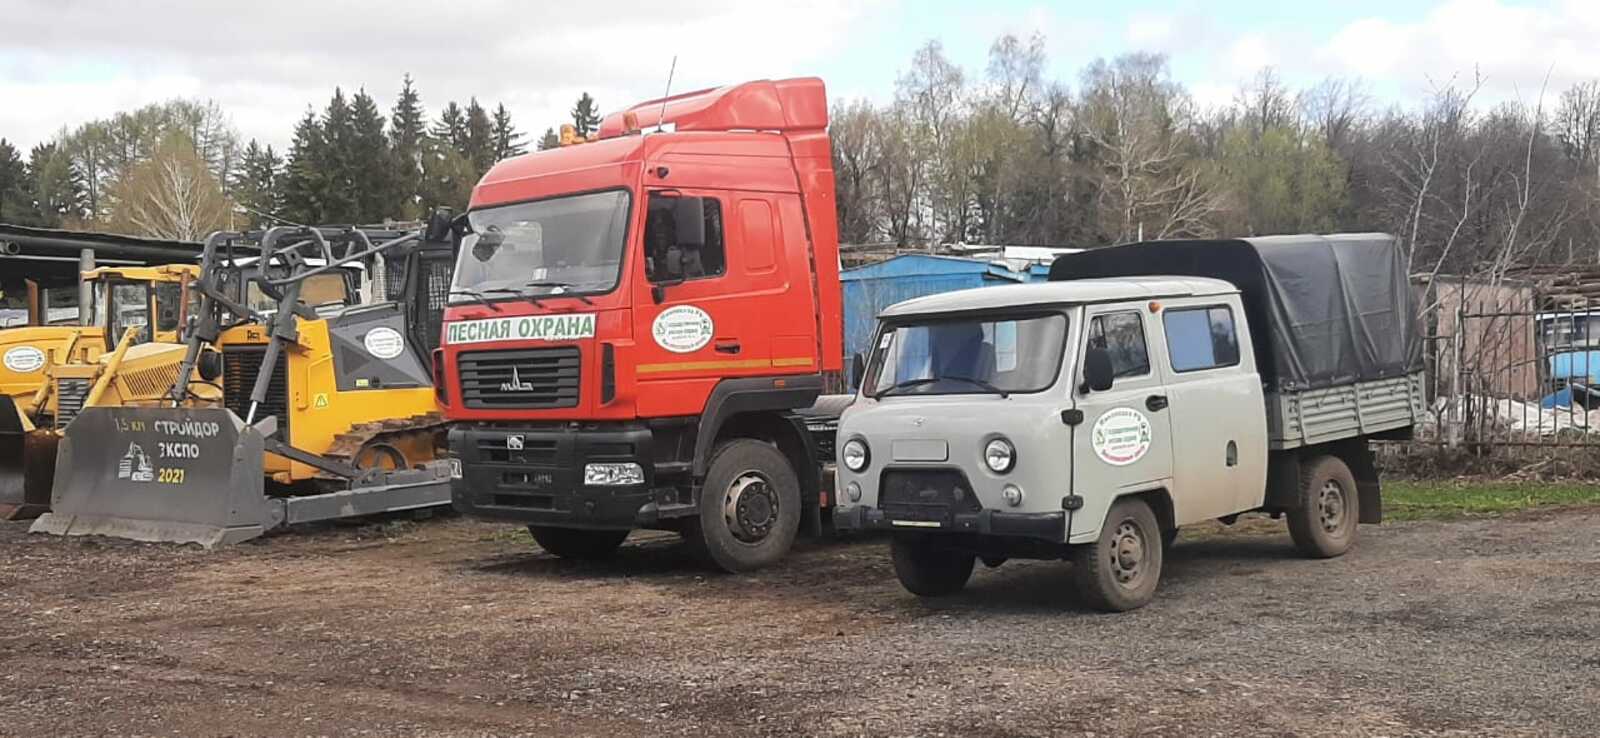 Республика Башкортостан в рамках нацпроекта "Экология" получила еще 4 единицы лесопожарной техники